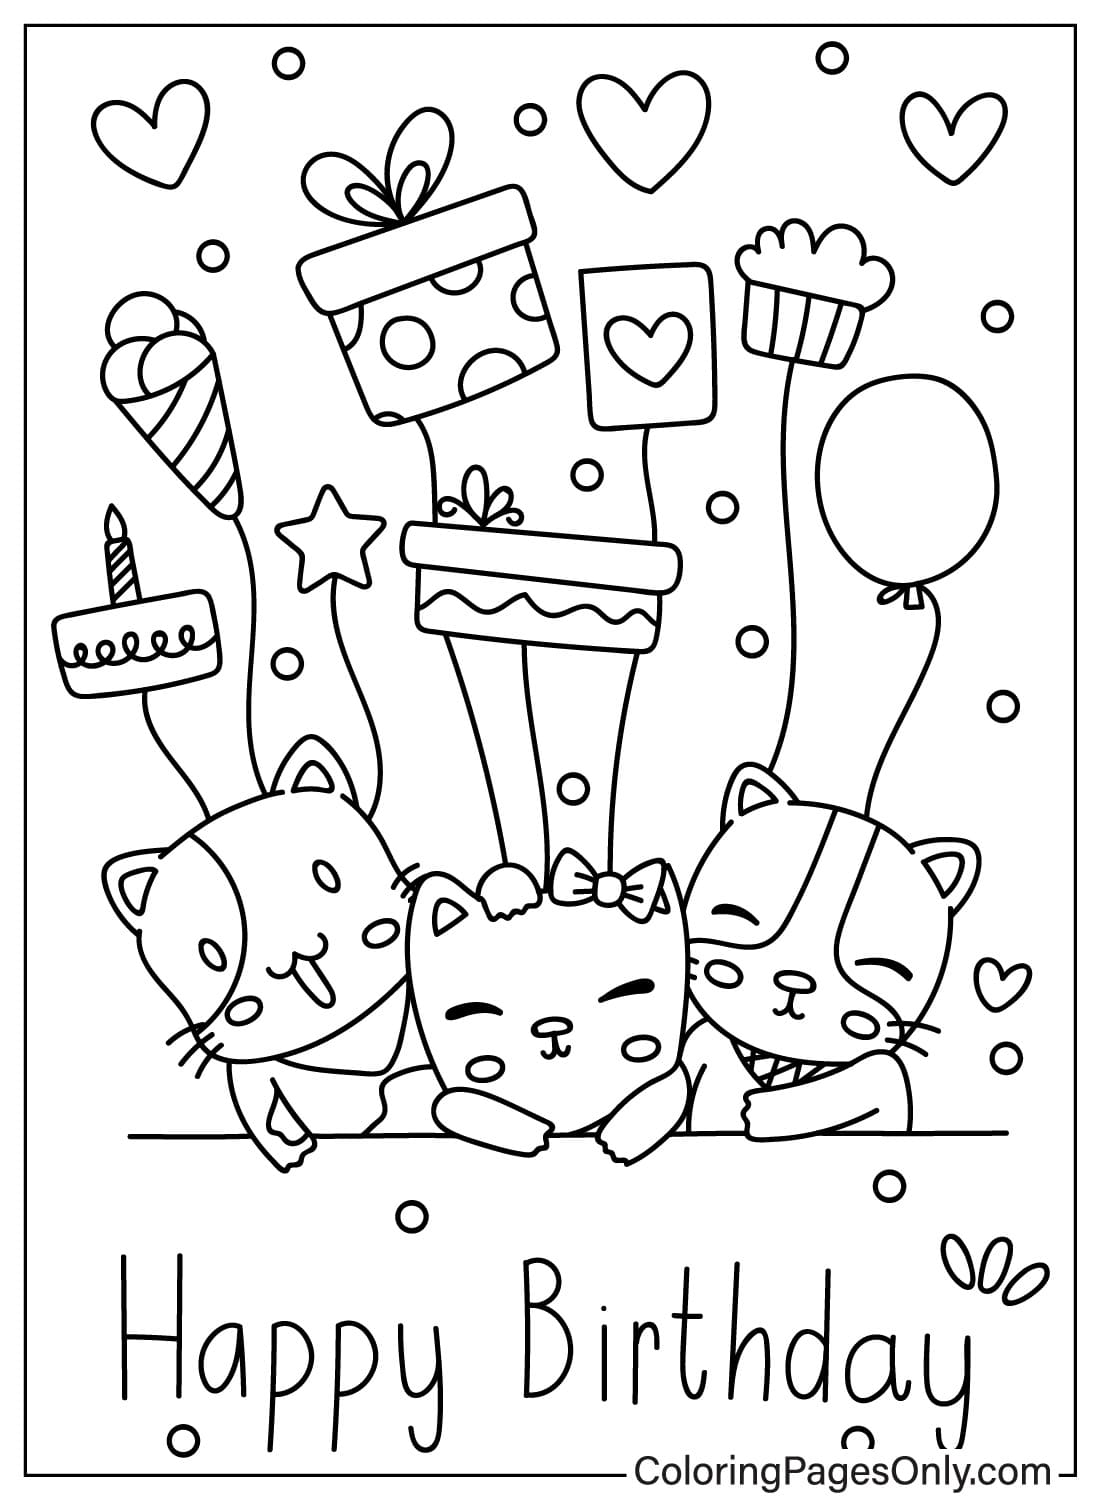 Cartão de feliz aniversário com página colorida do cartão de feliz aniversário